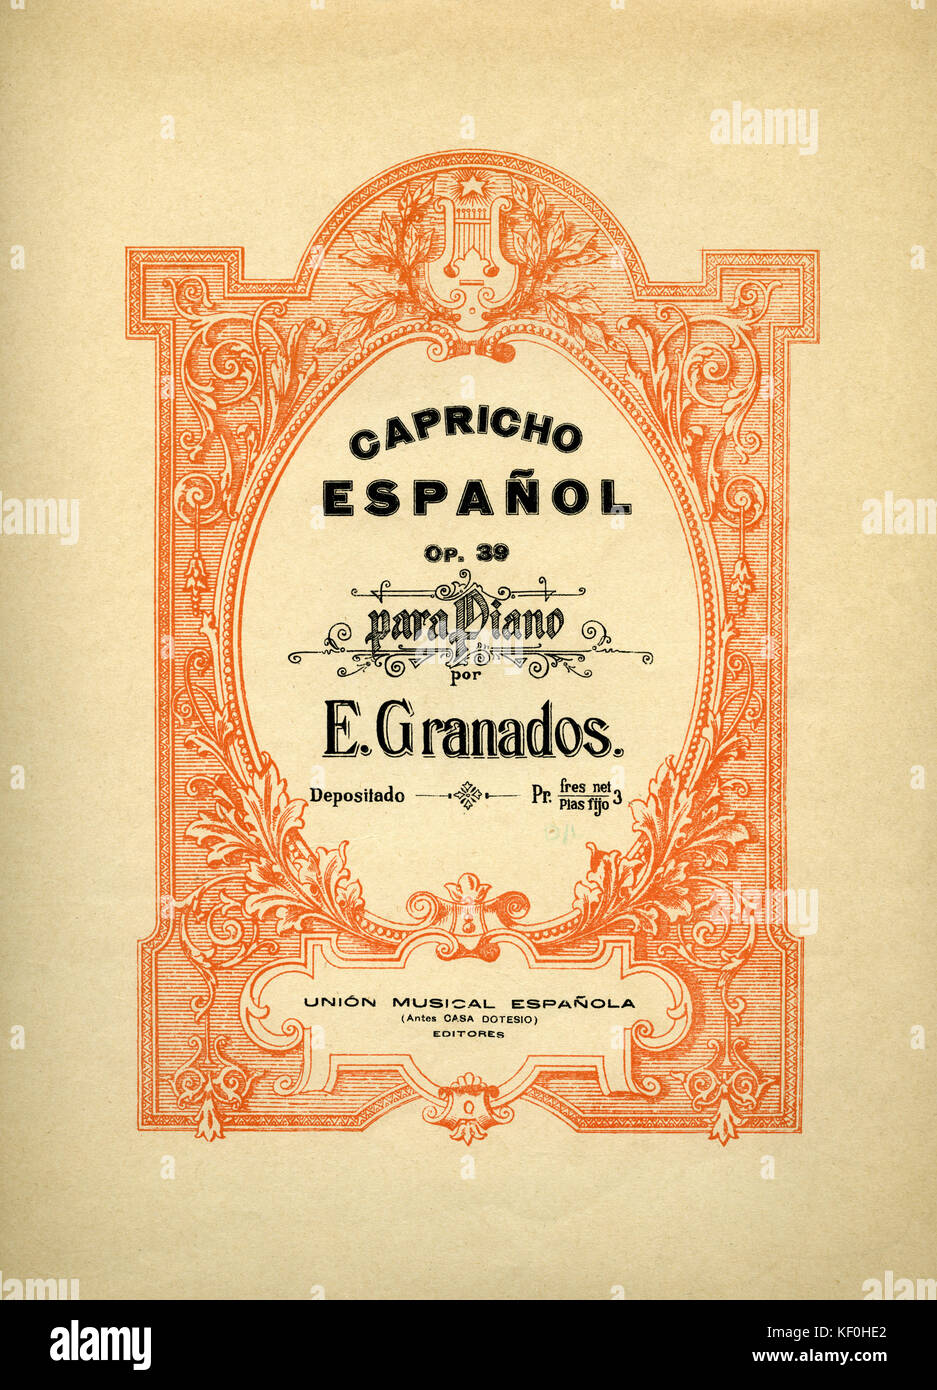 Enrique Granados Op. 39 'Capricho Espanol para Piano'. Ergebnis Abdeckung, veröffentlicht von Union musikalische Espanola. EG, der spanische Komponist, 27. Juli 1867 - 24. März 1916. Stockfoto